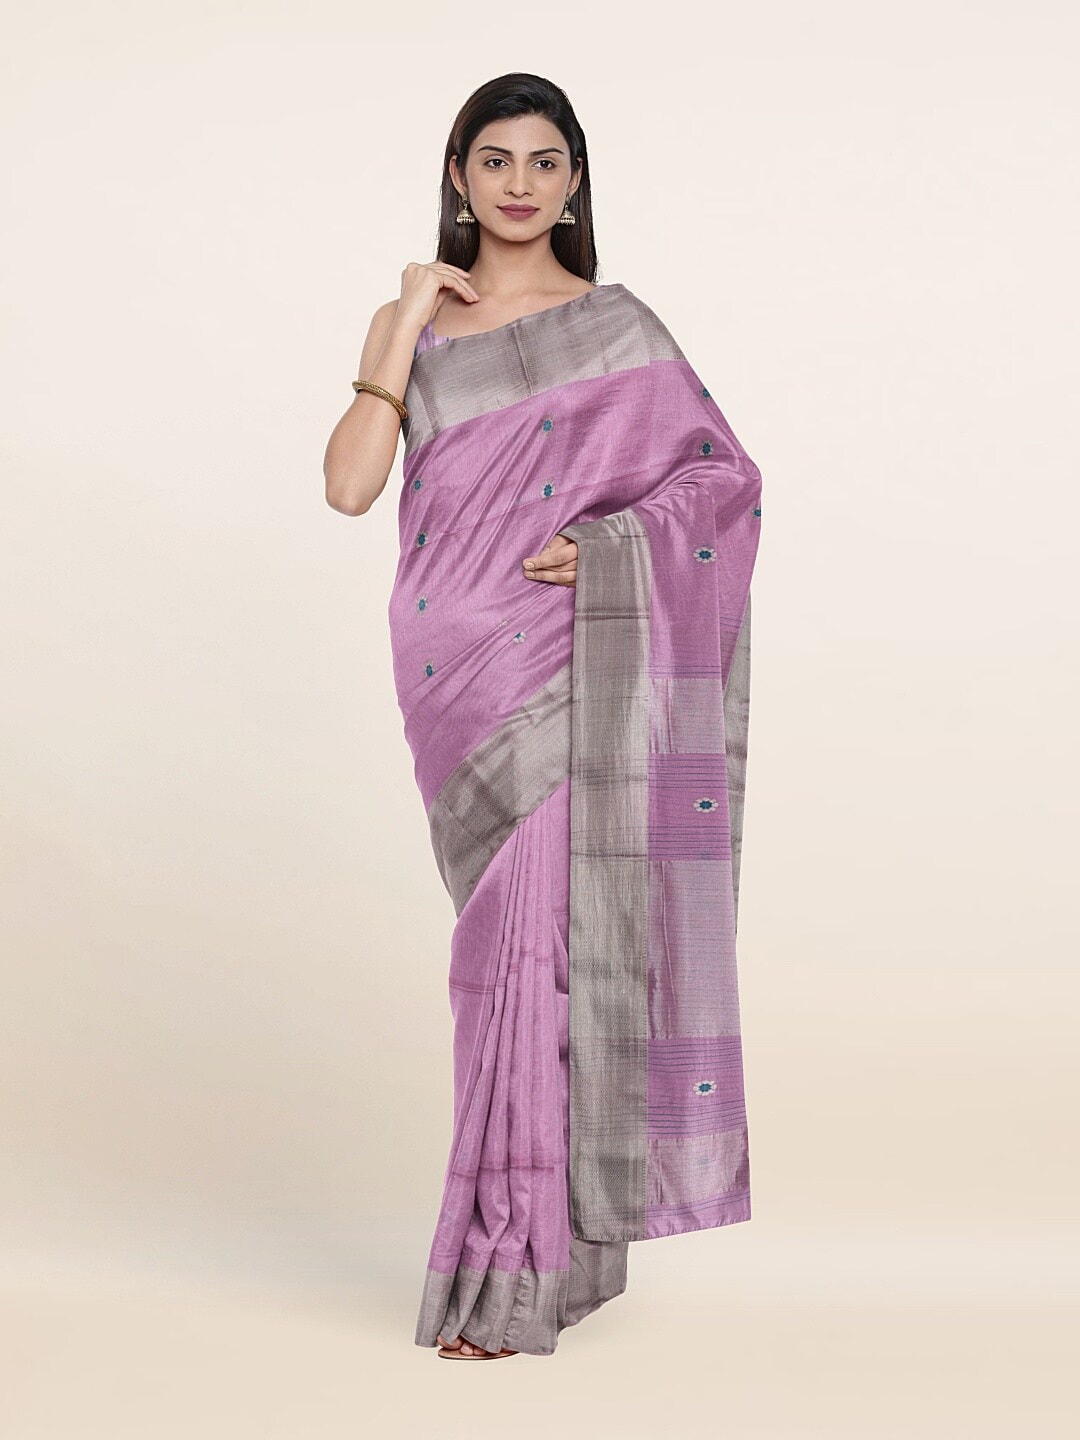 Pothys Lavender & Silver-Toned Woven Design Zari Silk Cotton Saree Price in India